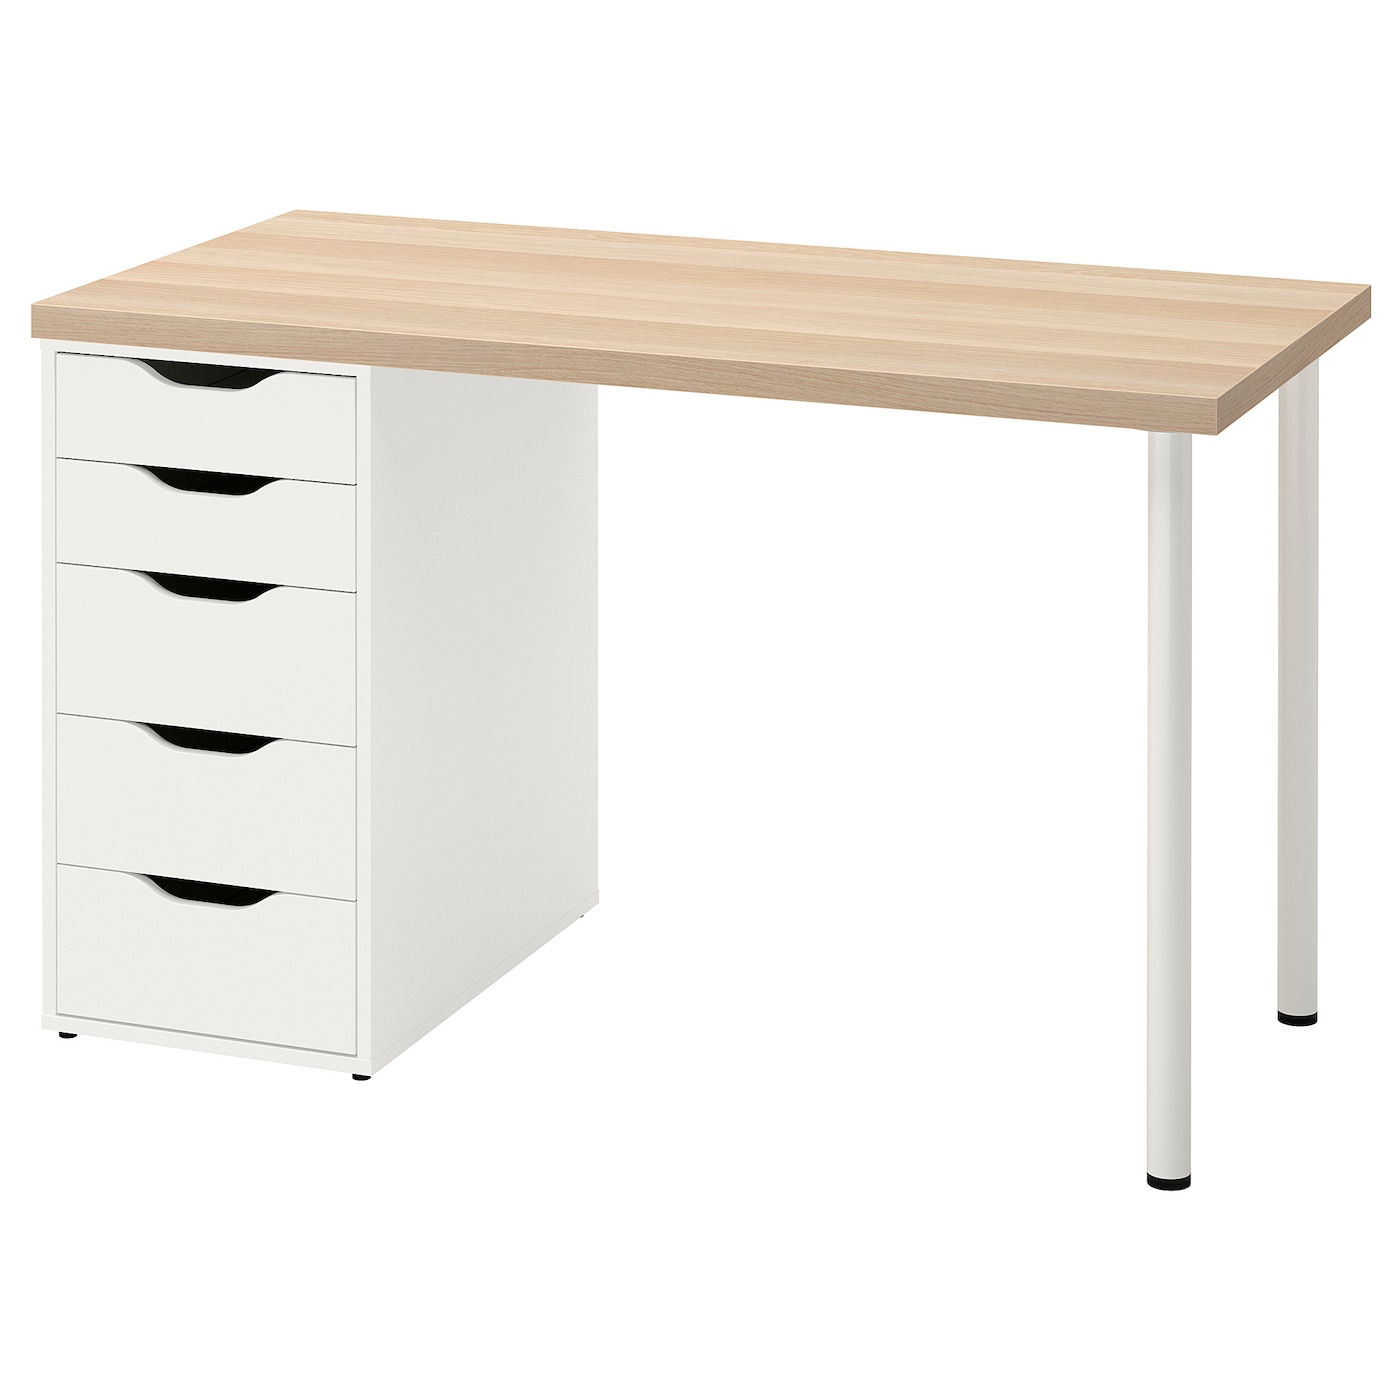 Письменный стол с ящиками - IKEA LAGKAPTEN/ALEX/ЛАГКАПТЕН/АЛЕКС ИКЕА, 120х60 см, под беленый дуб/белый